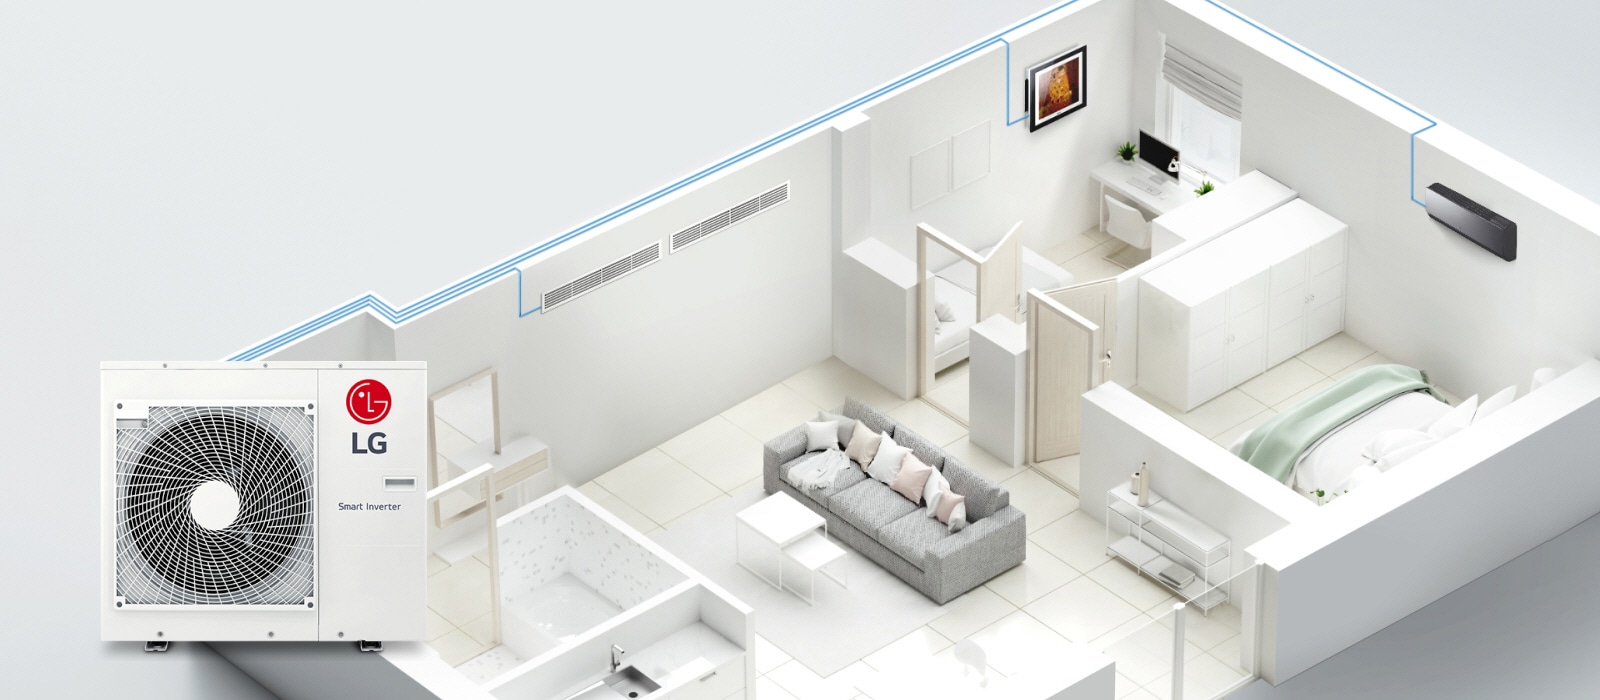 มุมมองภายในบ้านแสดงให้เห็นท่อเชื่อมต่อกับเครื่องปรับอากาศ LG Smart Inverter 3 เครื่องที่ติดตั้งในแต่ละห้อง